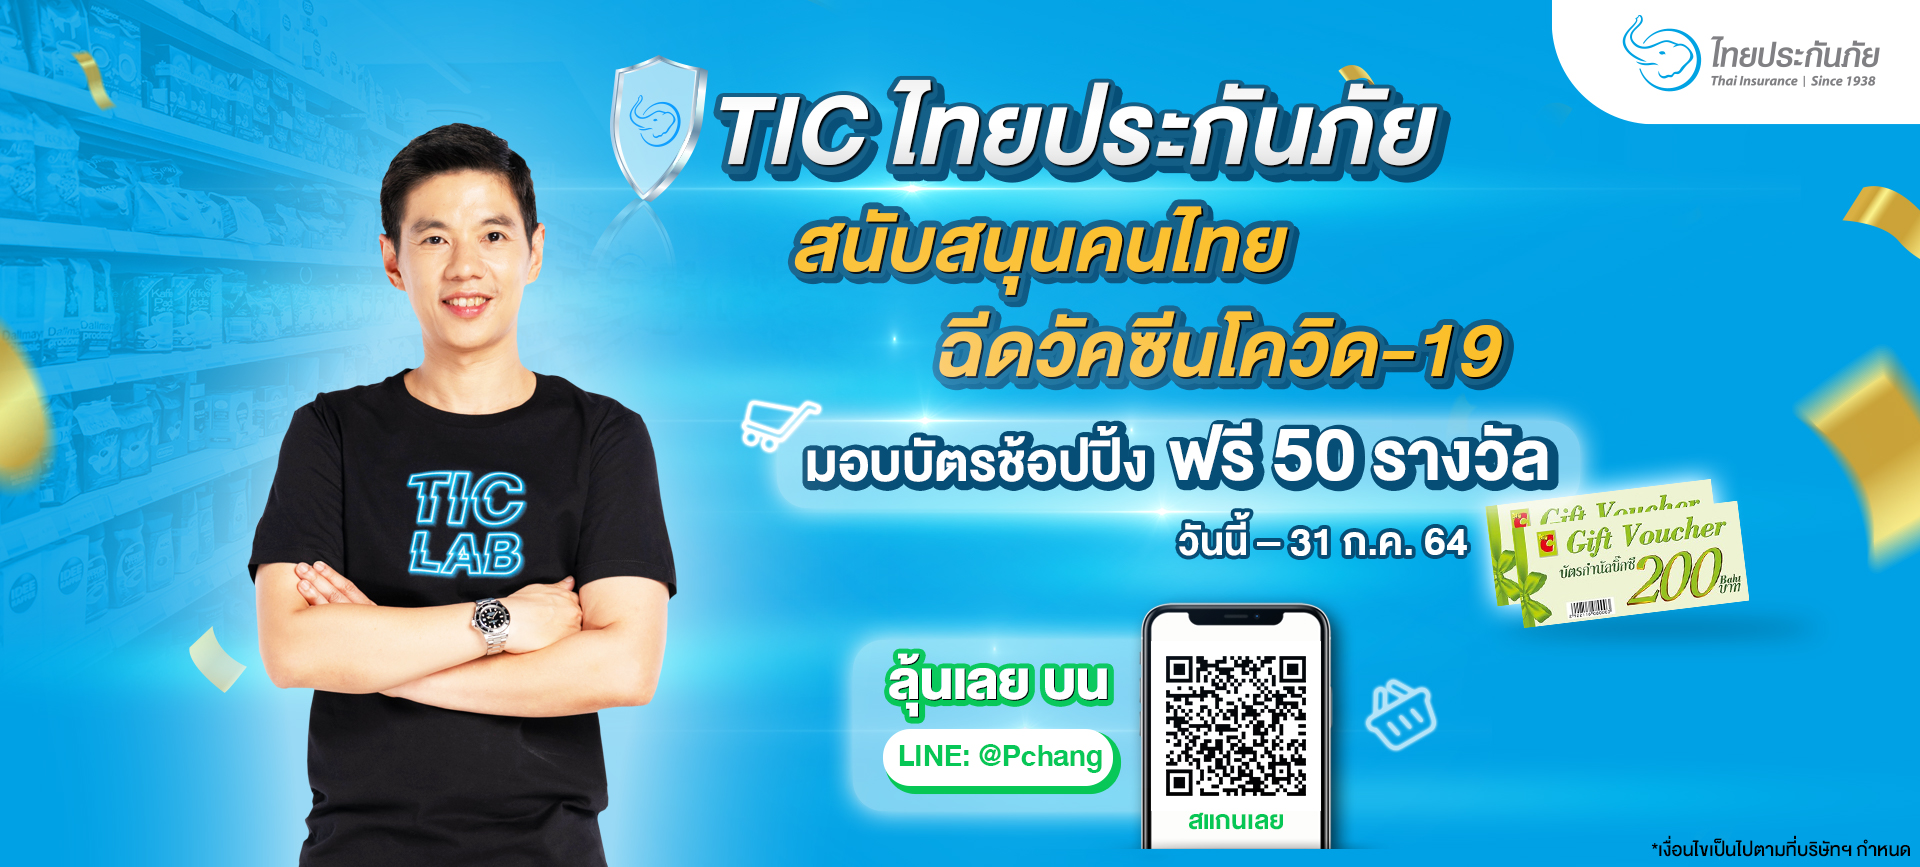 TIC ไทยประกันภัย สนับสนุนคนไทยฉีดวัคซีนโควิด-19  อุ่นใจพร้อมลุ้นช้อปปิ้งฟรี 50 รางวัล